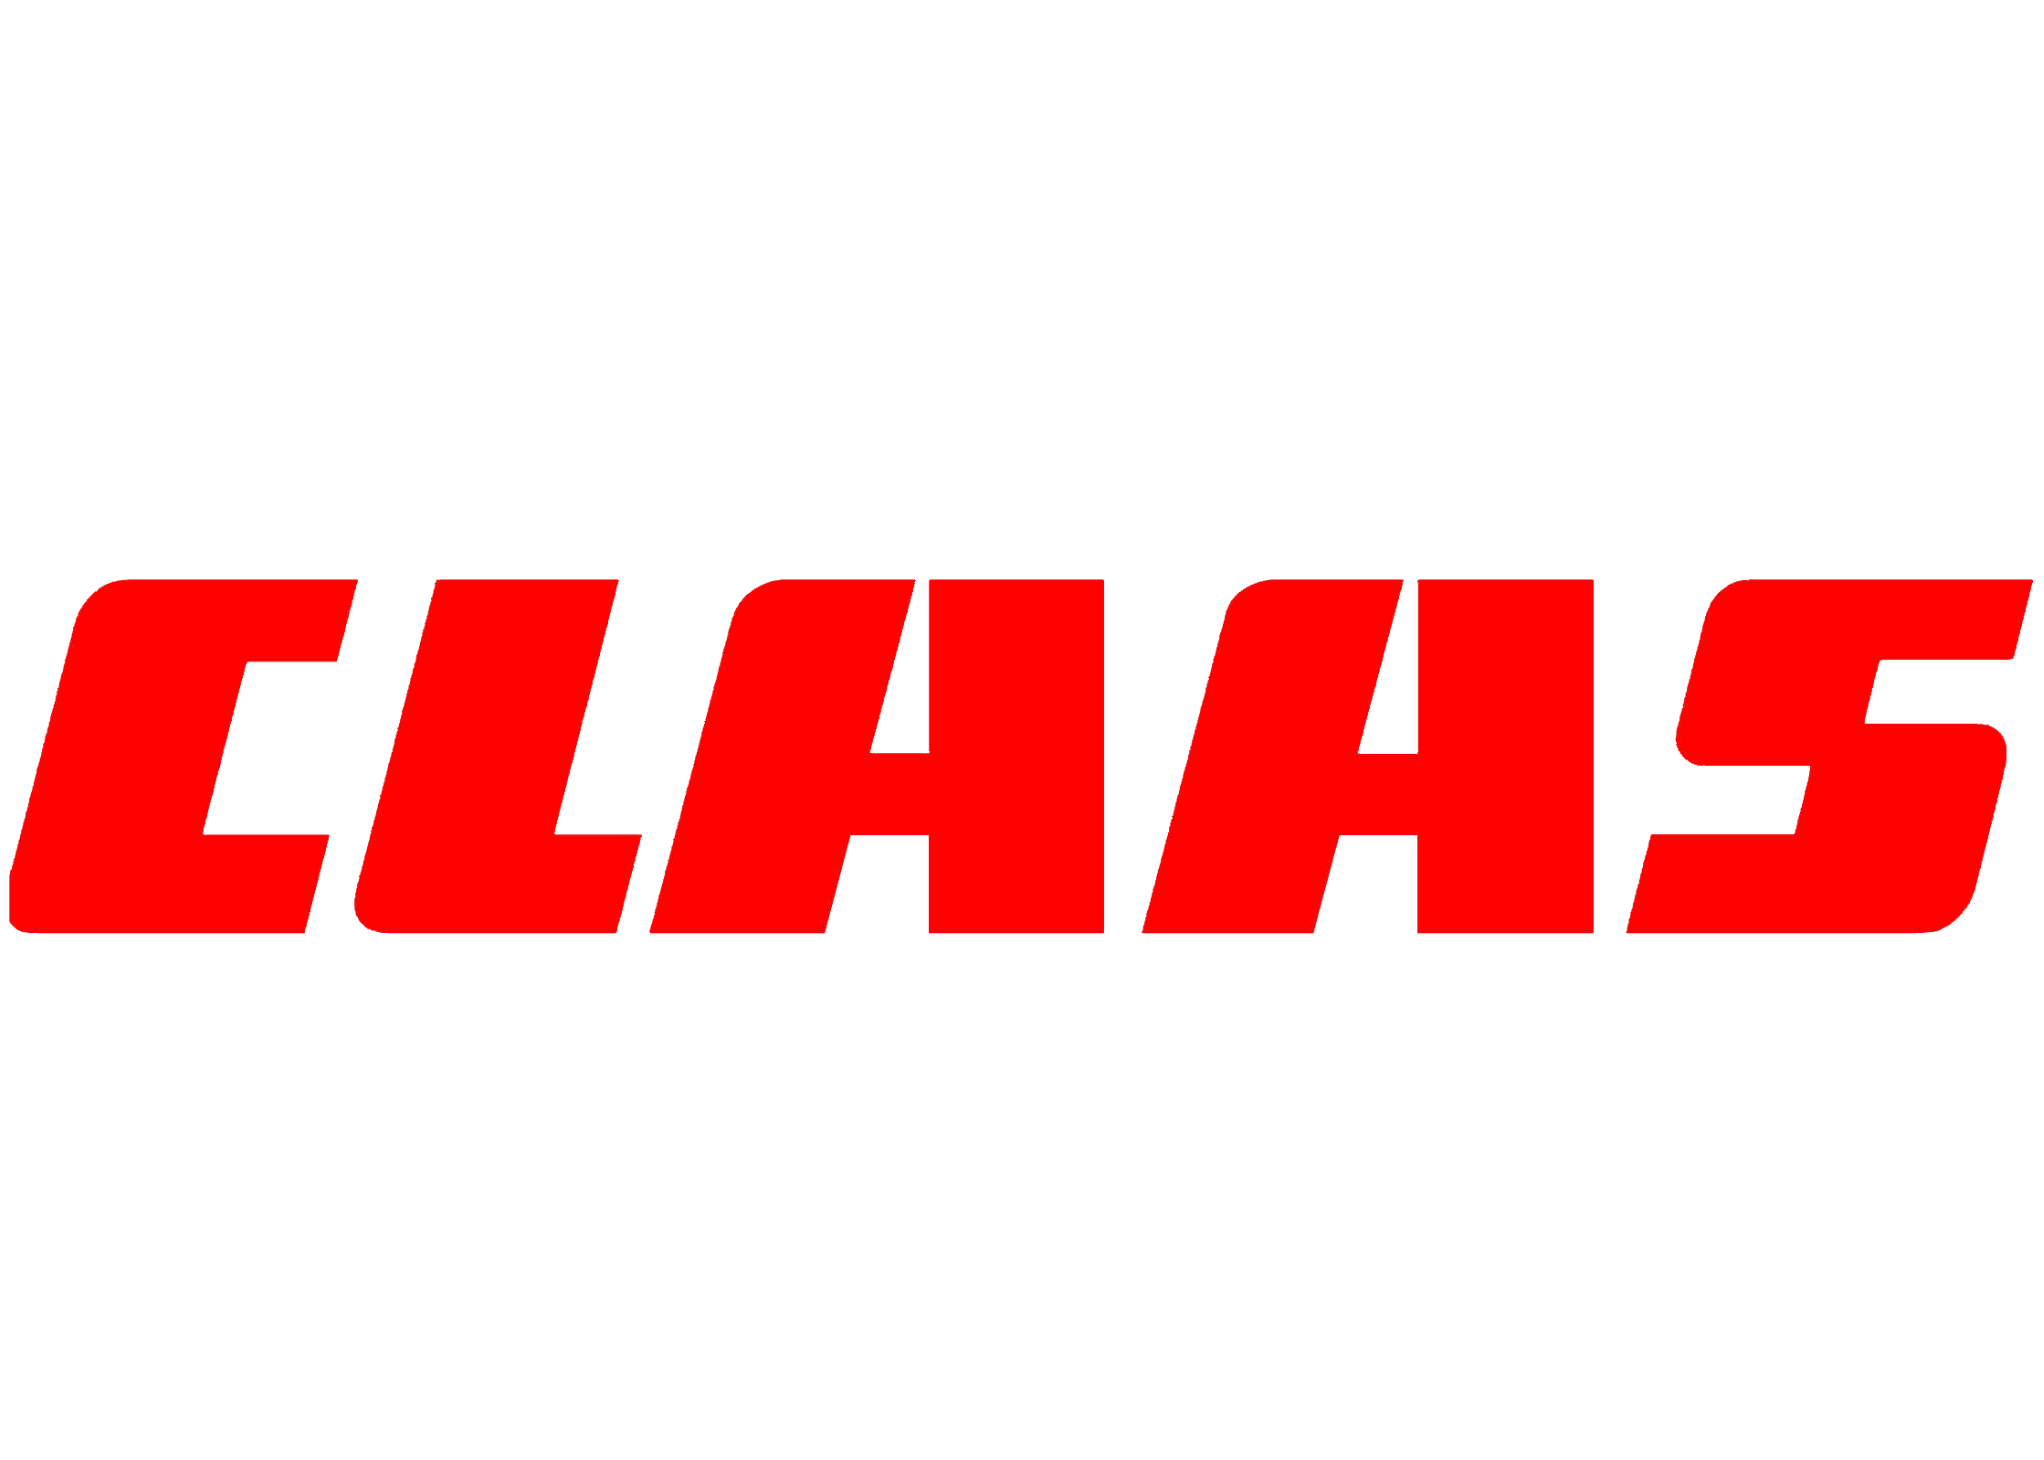 CLAAS